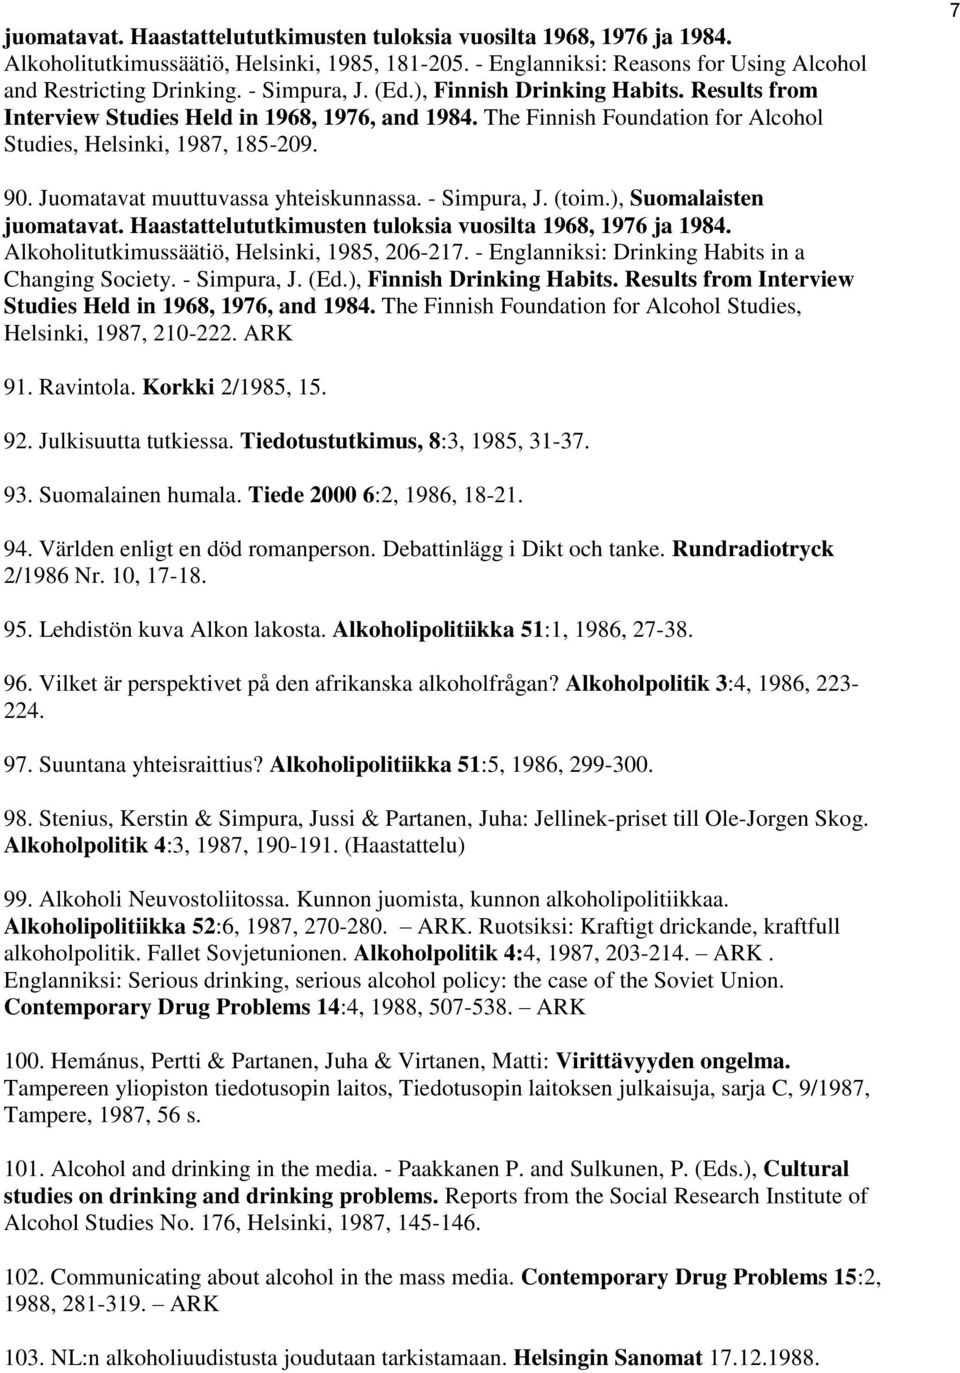 Juomatavat muuttuvassa yhteiskunnassa. - Simpura, J. (toim.), Suomalaisten juomatavat. Haastattelututkimusten tuloksia vuosilta 1968, 1976 ja 1984. Alkoholitutkimussäätiö, Helsinki, 1985, 206-217.